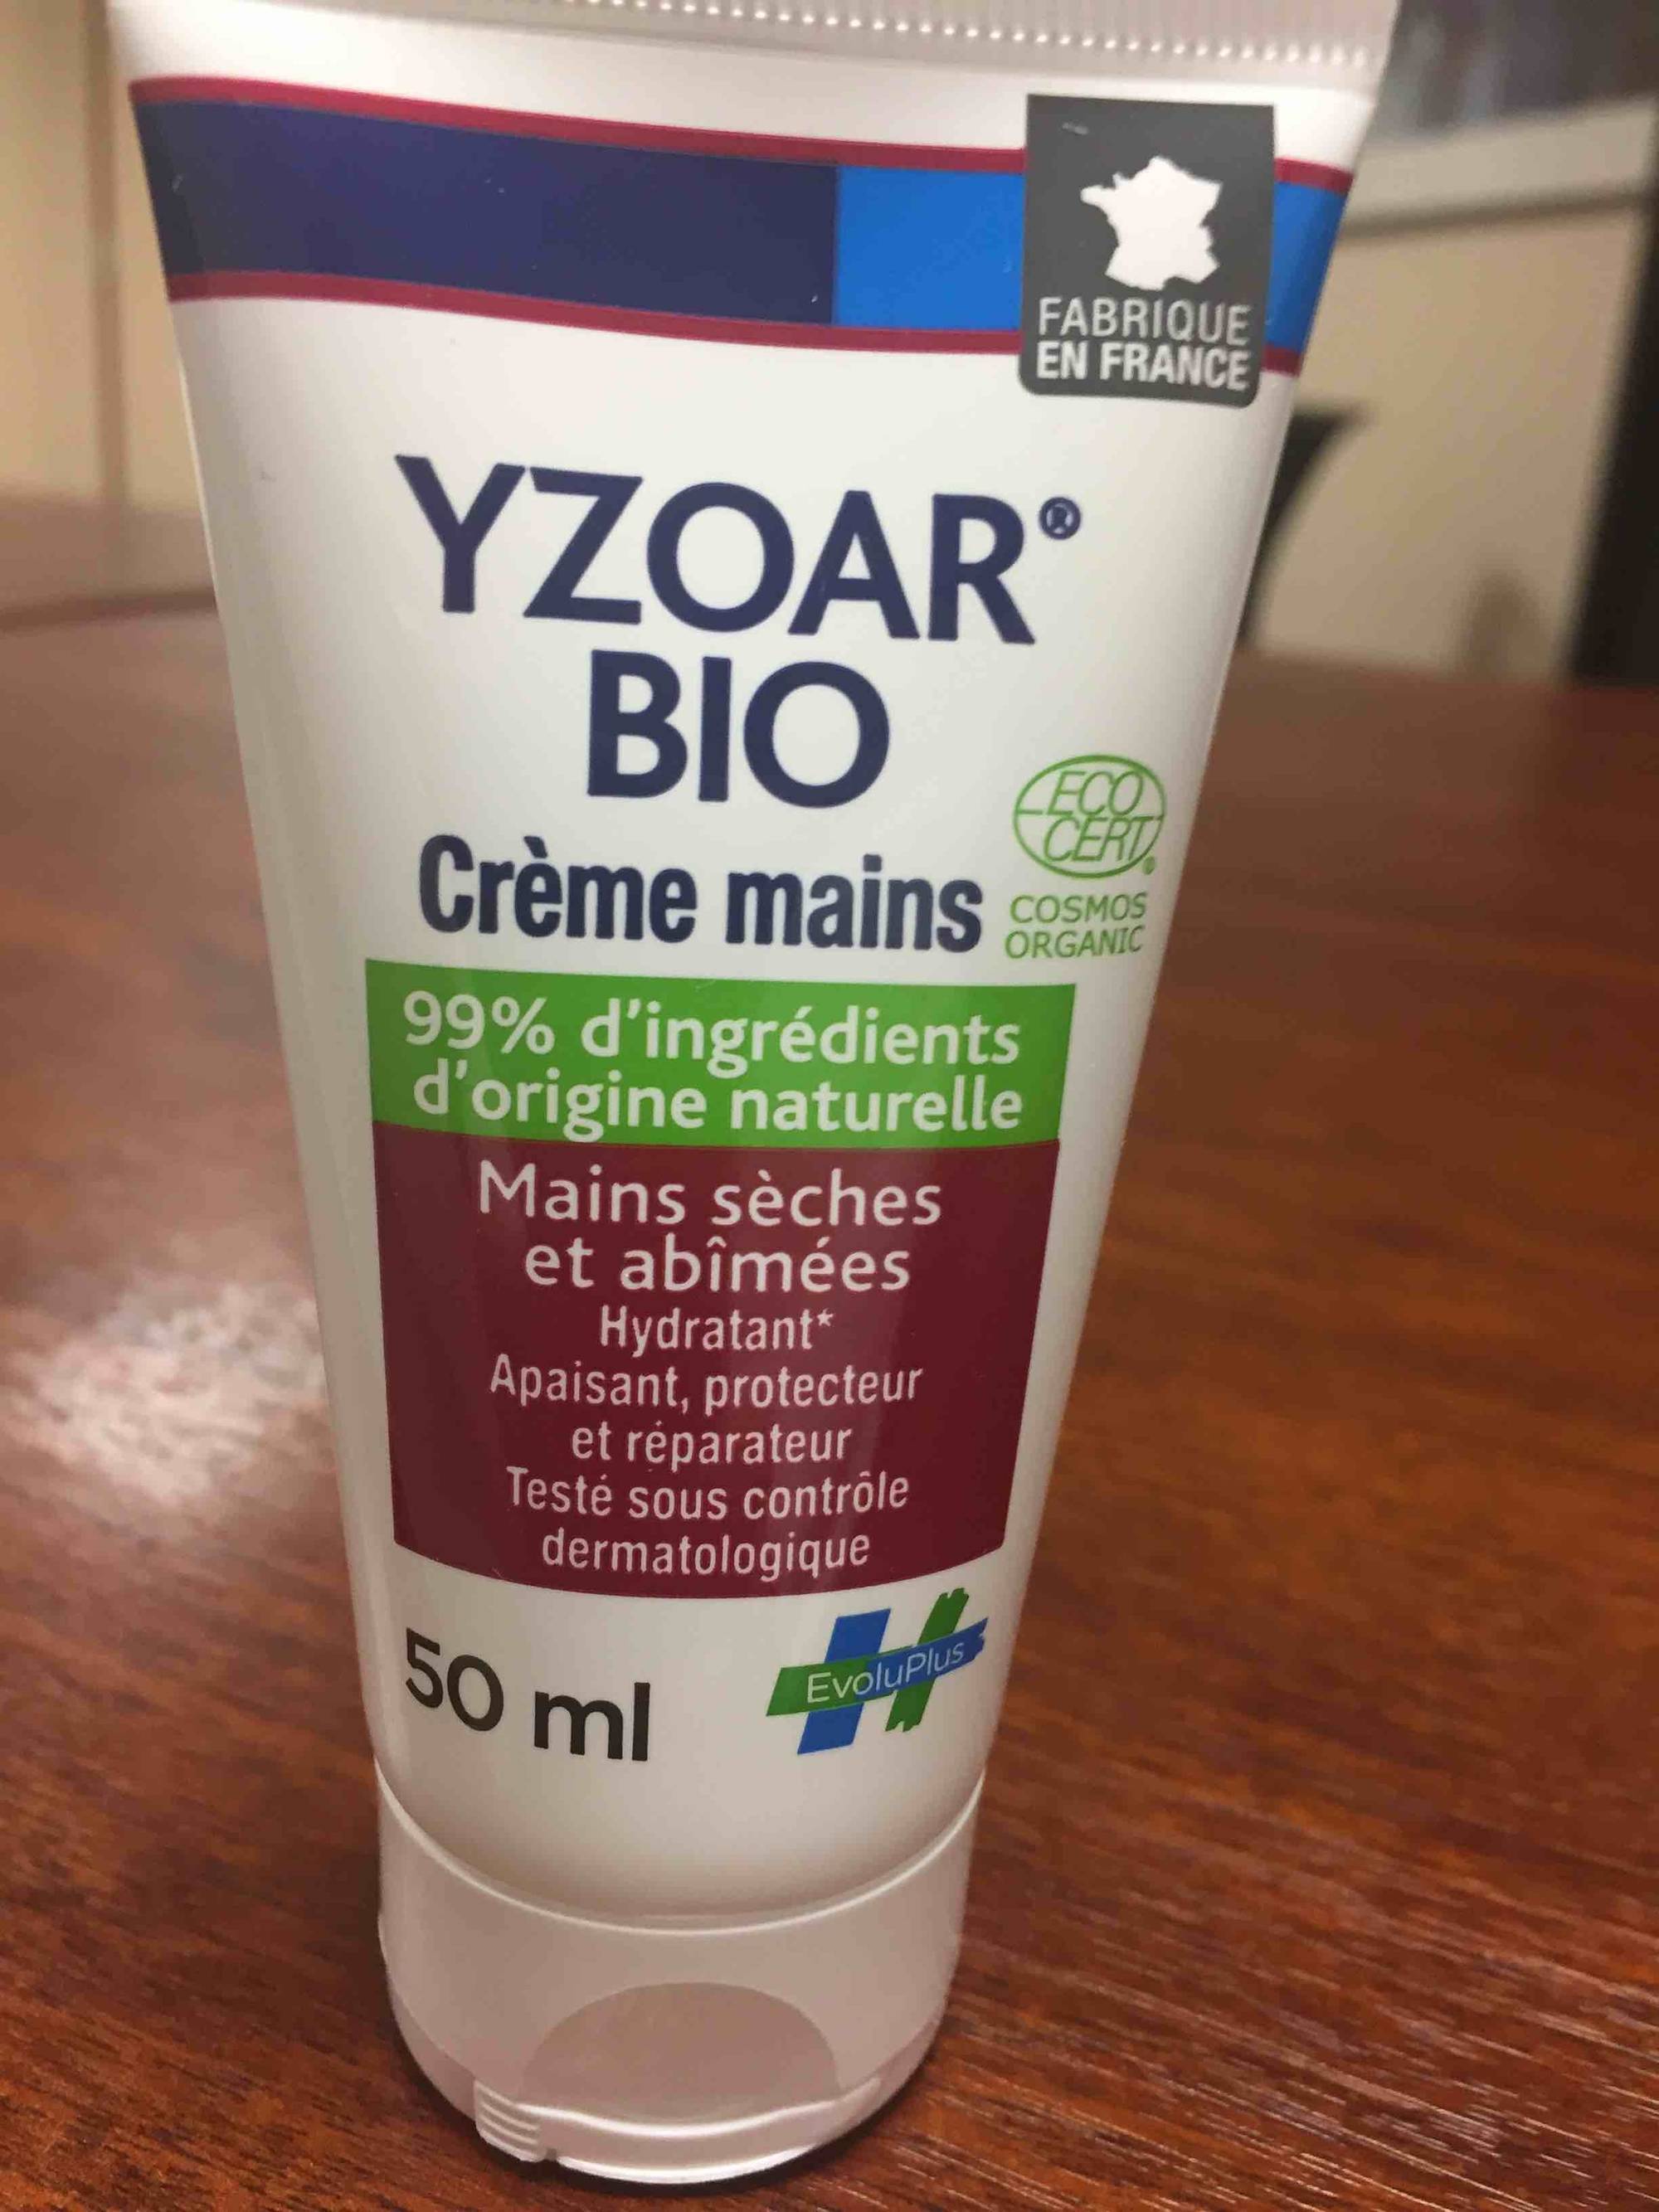 YZOAR - Bio - Crème mains sèches et abîmées